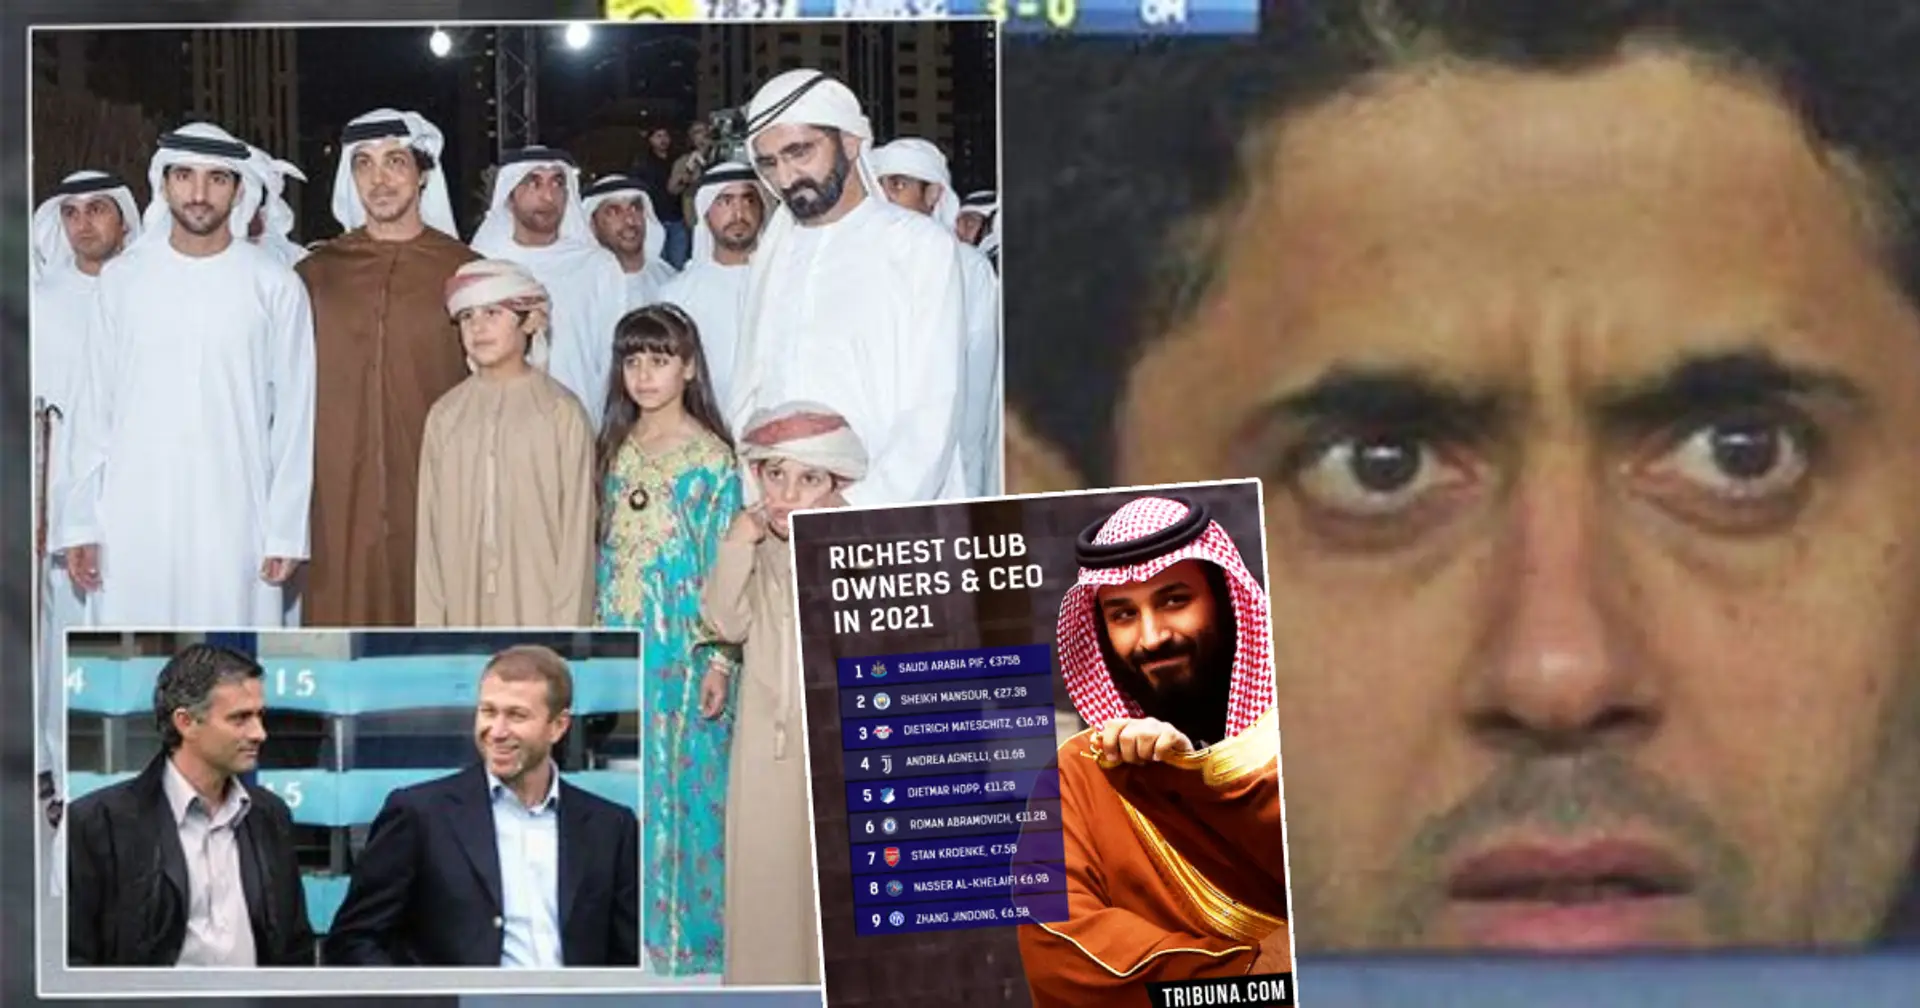 Se han revelado los propietarios más ricos de los clubes de fútbol europeos: Nasser Al-Khelaifi del PSG solo es octavo